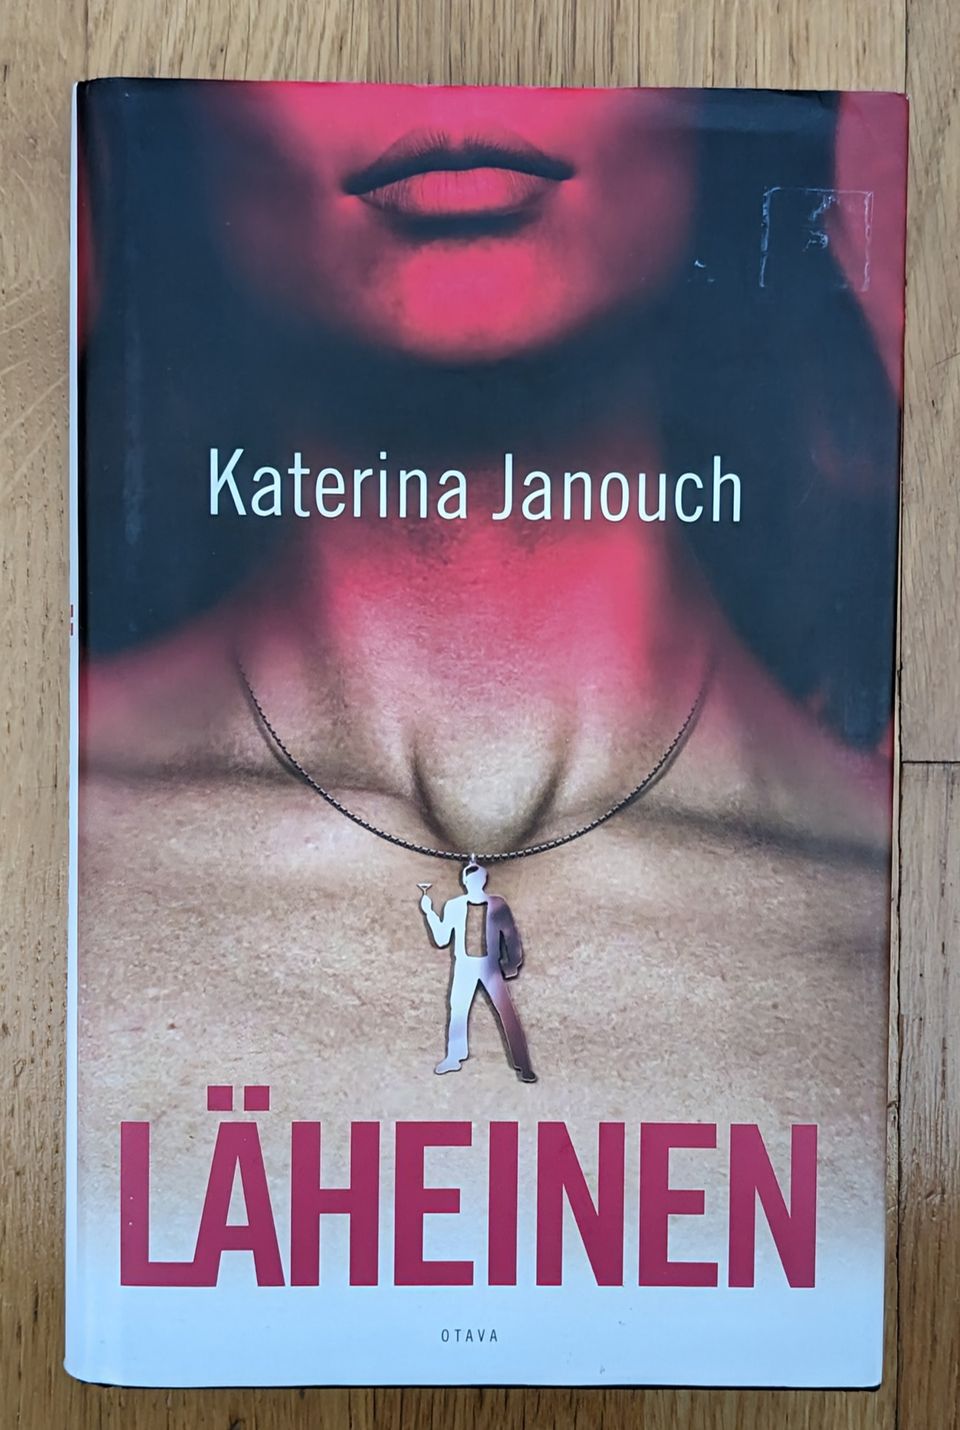 Katerine Janouch, Läheinen